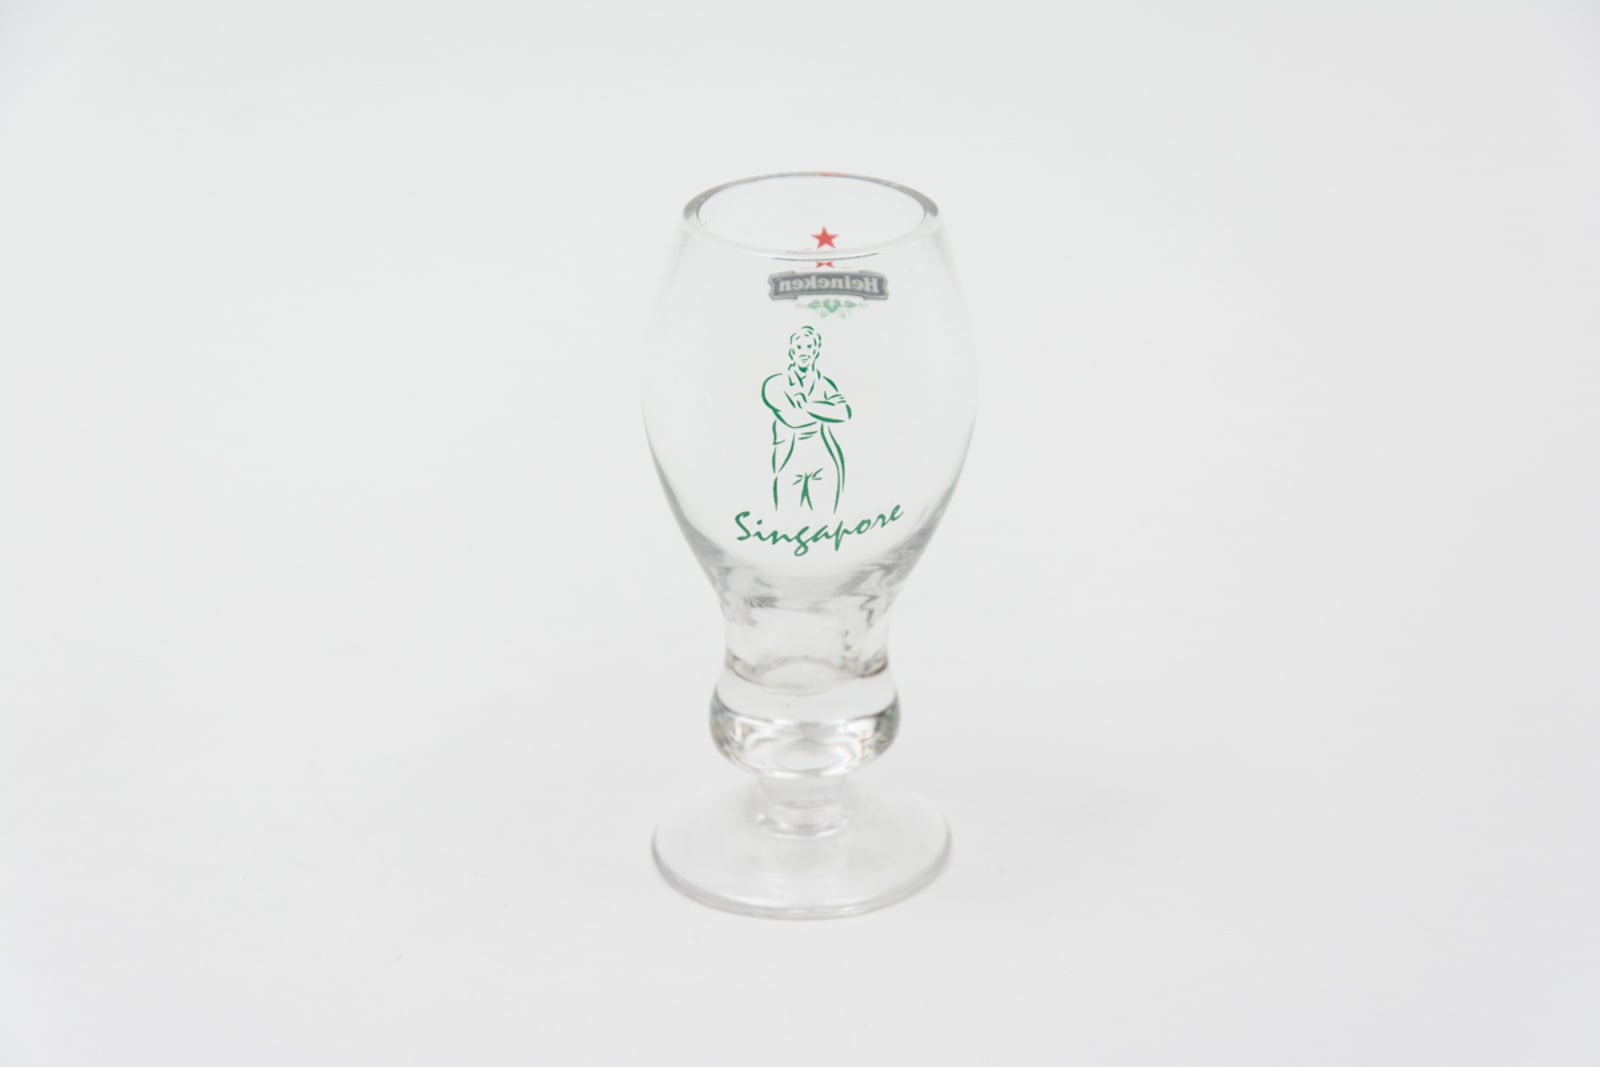 Heineken Singapore Weizen Shot Glassware